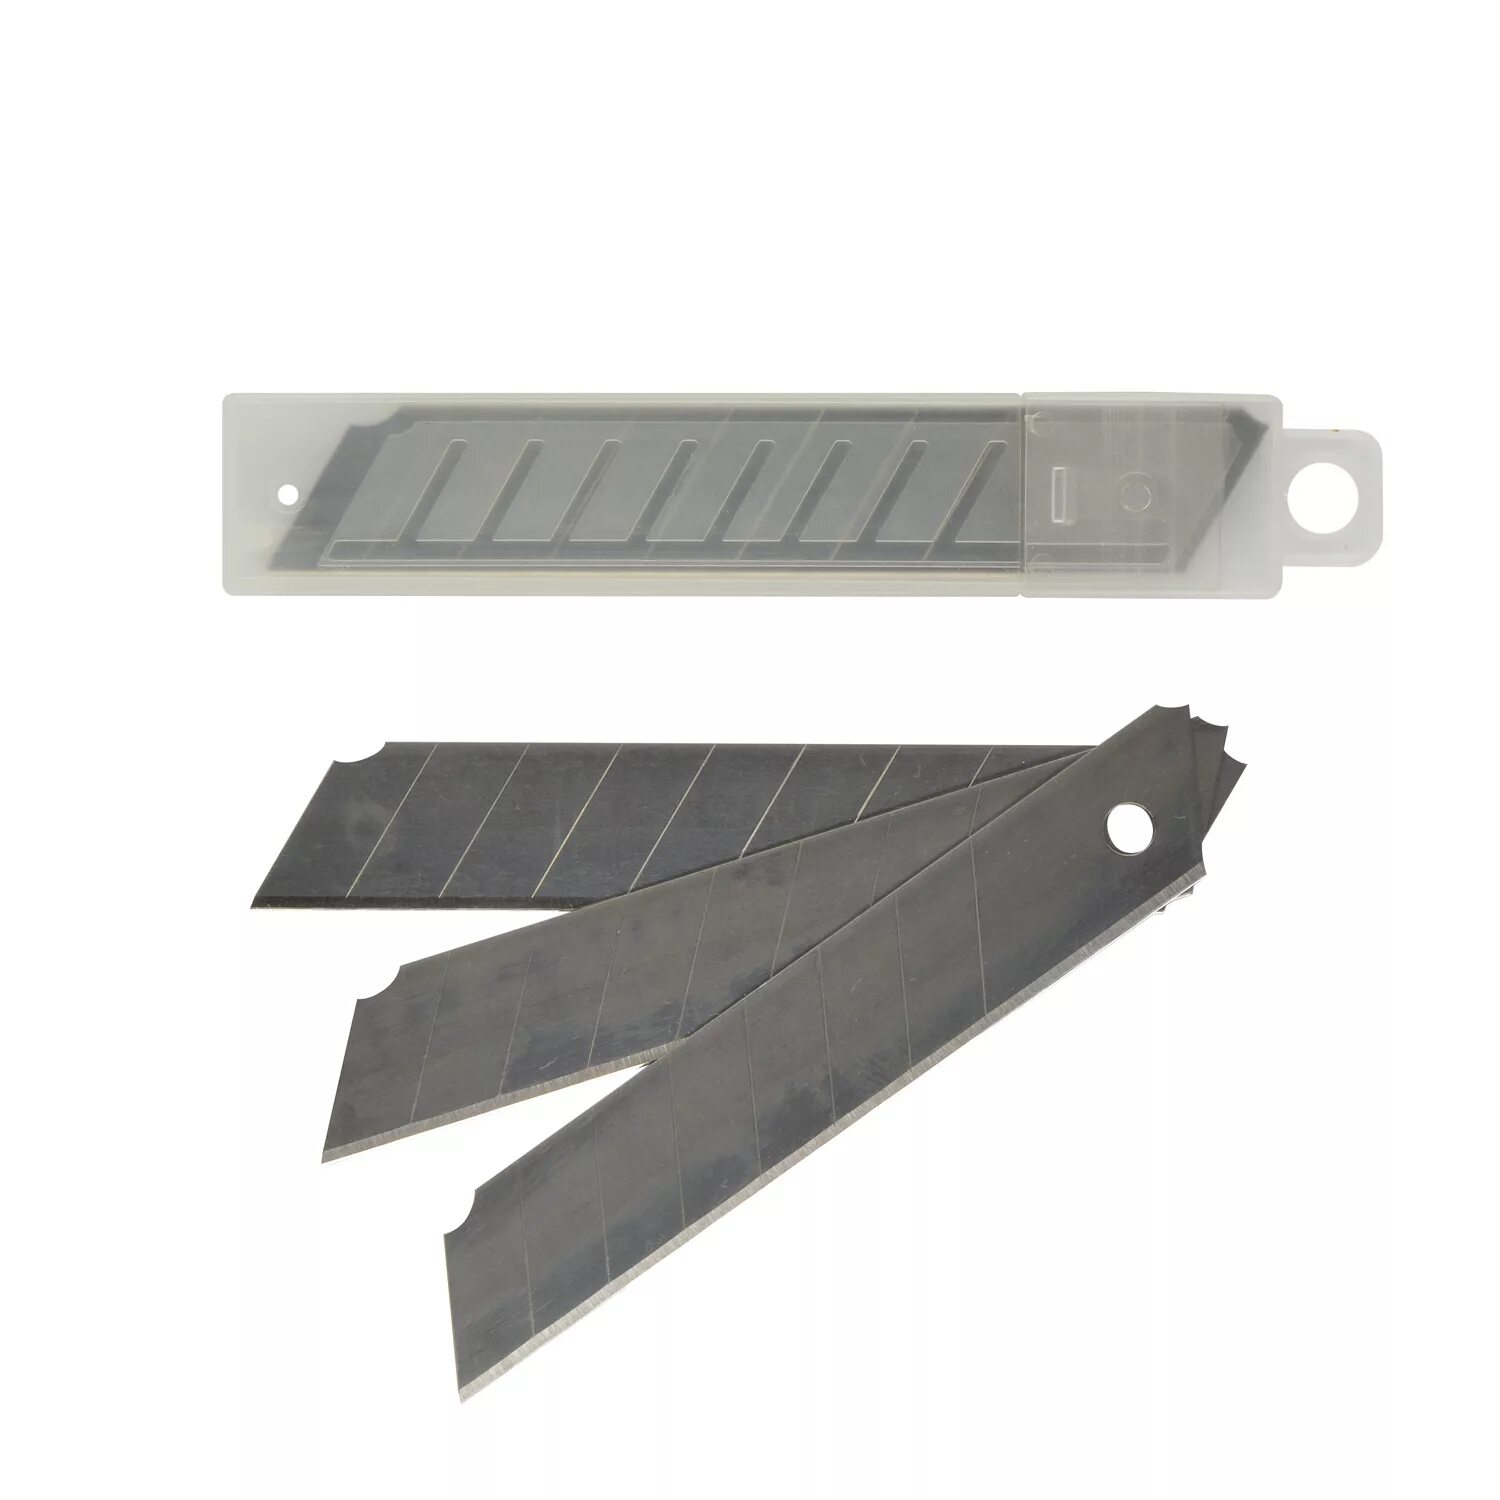 Santool лезвия для ножа 18мм. Лезвия для ножа 18 мм (20/ 400) vertextools. Лезвия для канцелярского ножа 18 мм. Лезвия сменные для ножа 18мм 10шт Vertex. Лезвия для ножа 10 мм